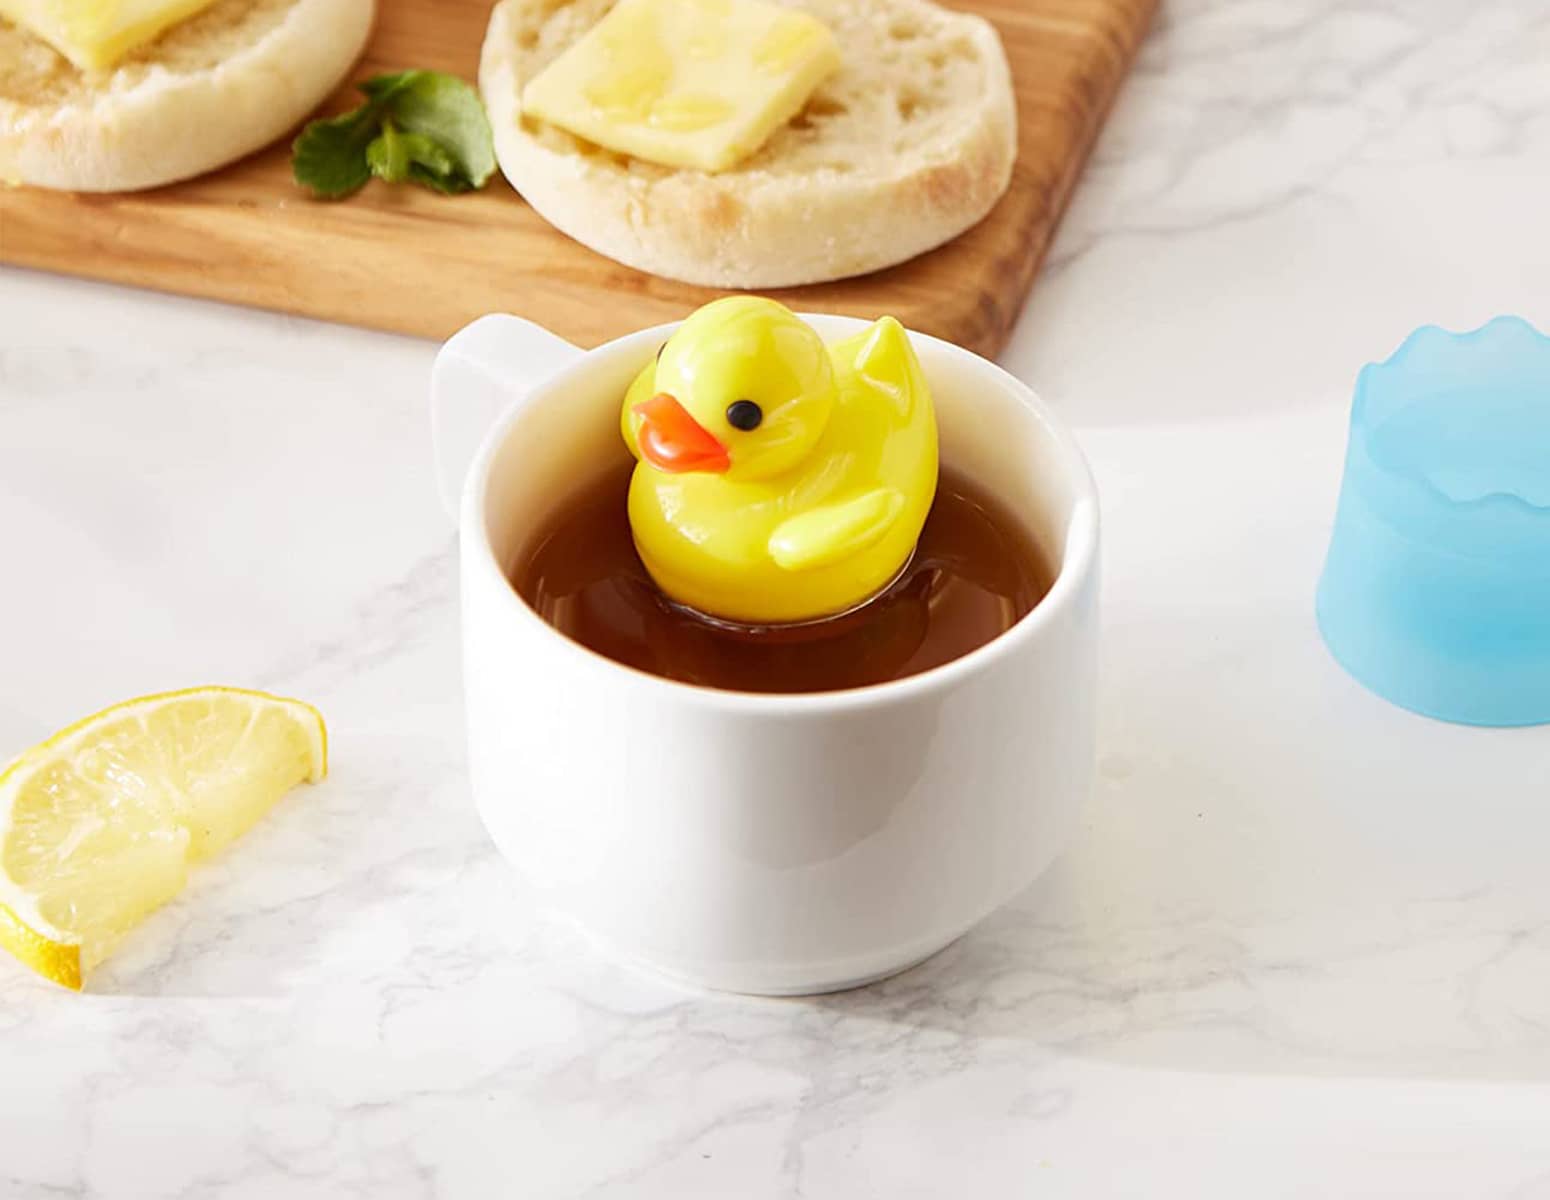 Rubber Duck Floating Tea Infuser